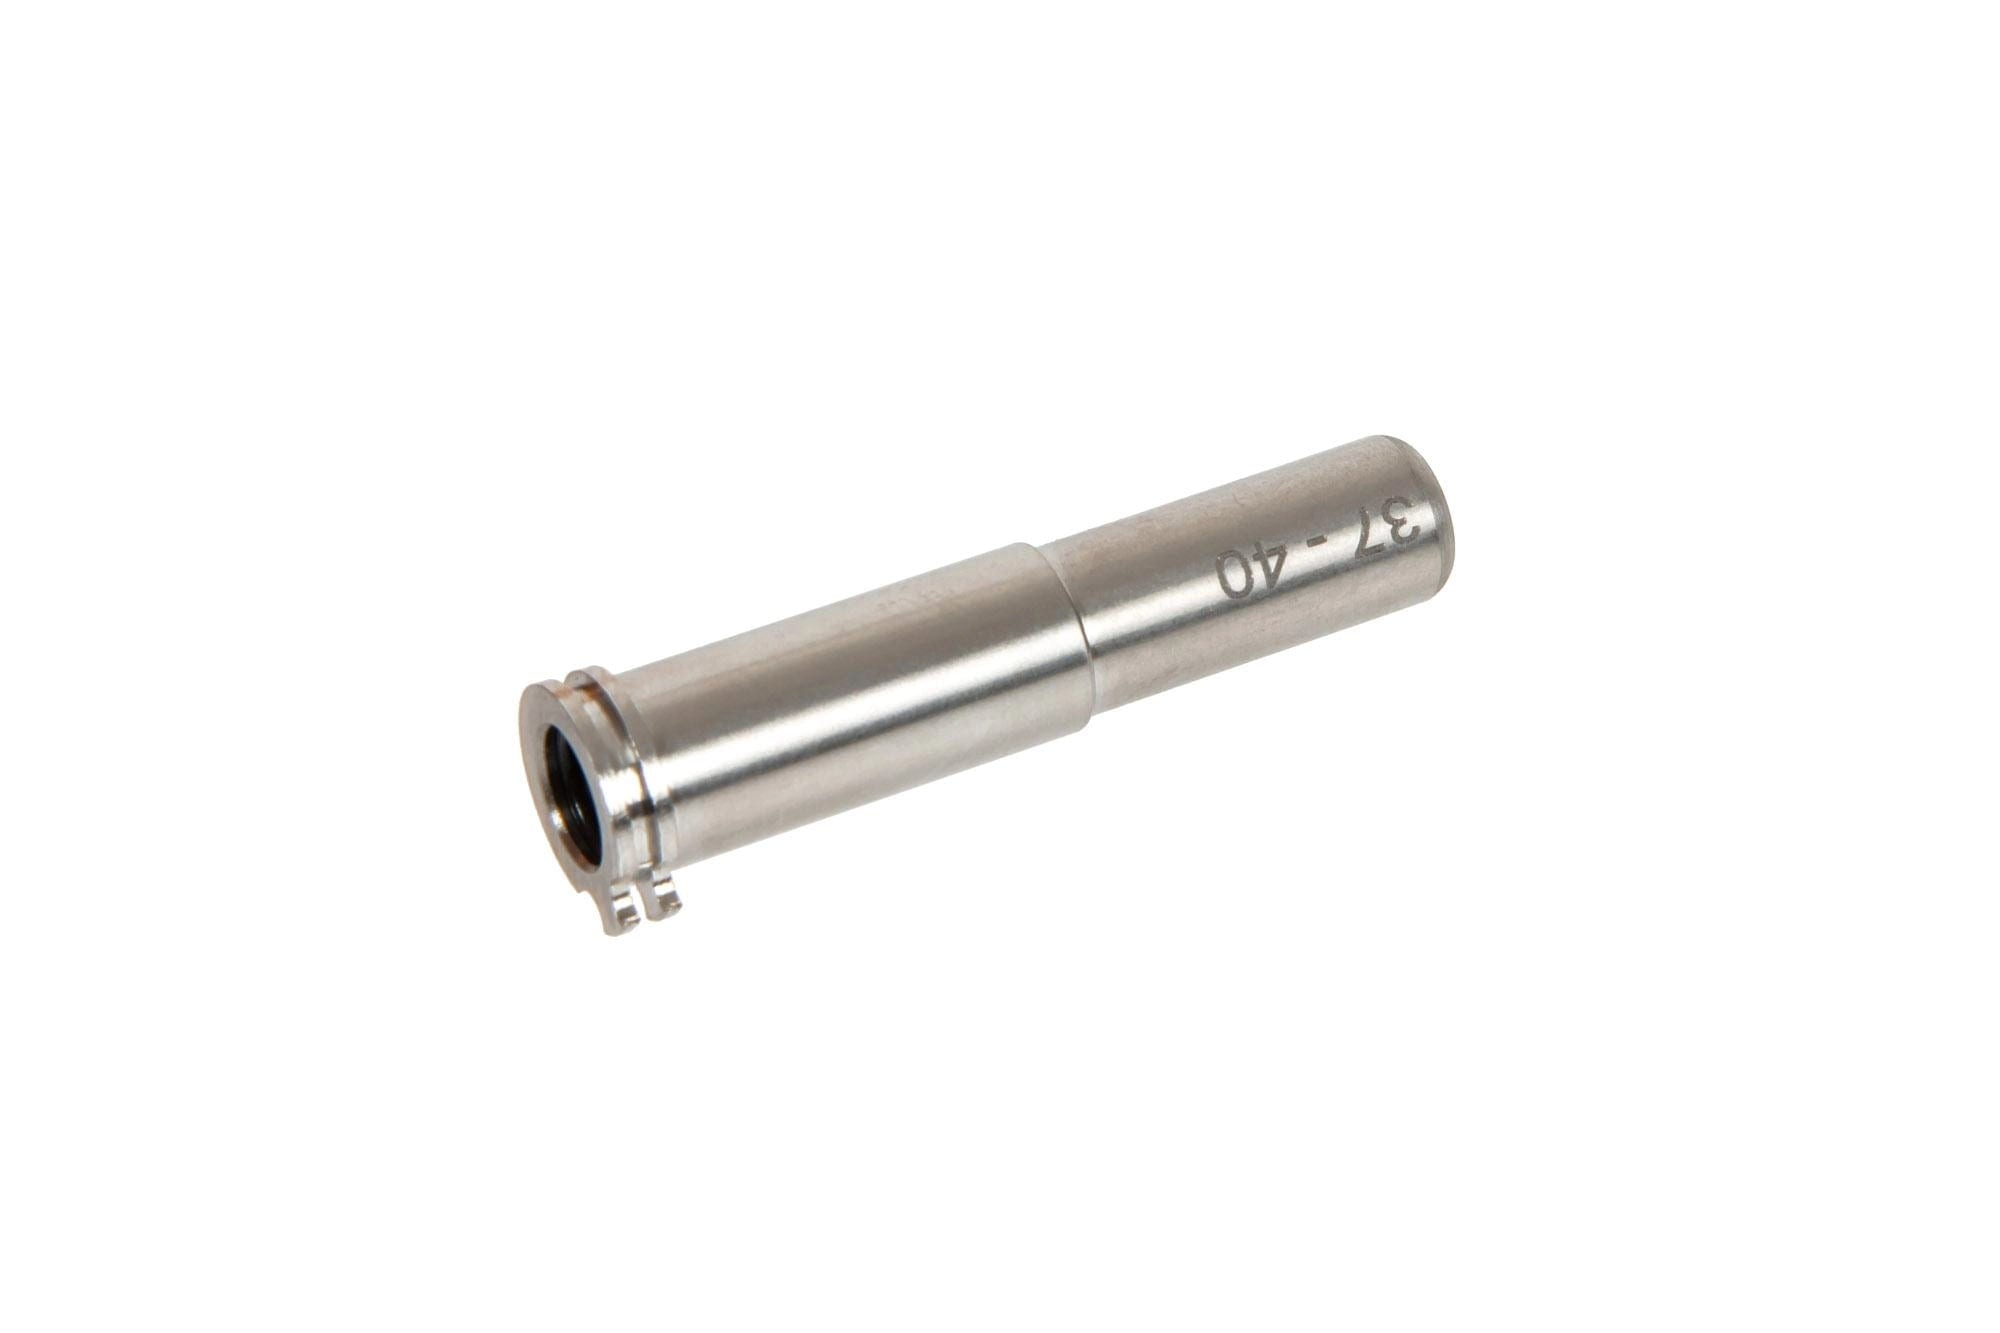 Adjustable Titanium Nozzle - 37mm to 40mm